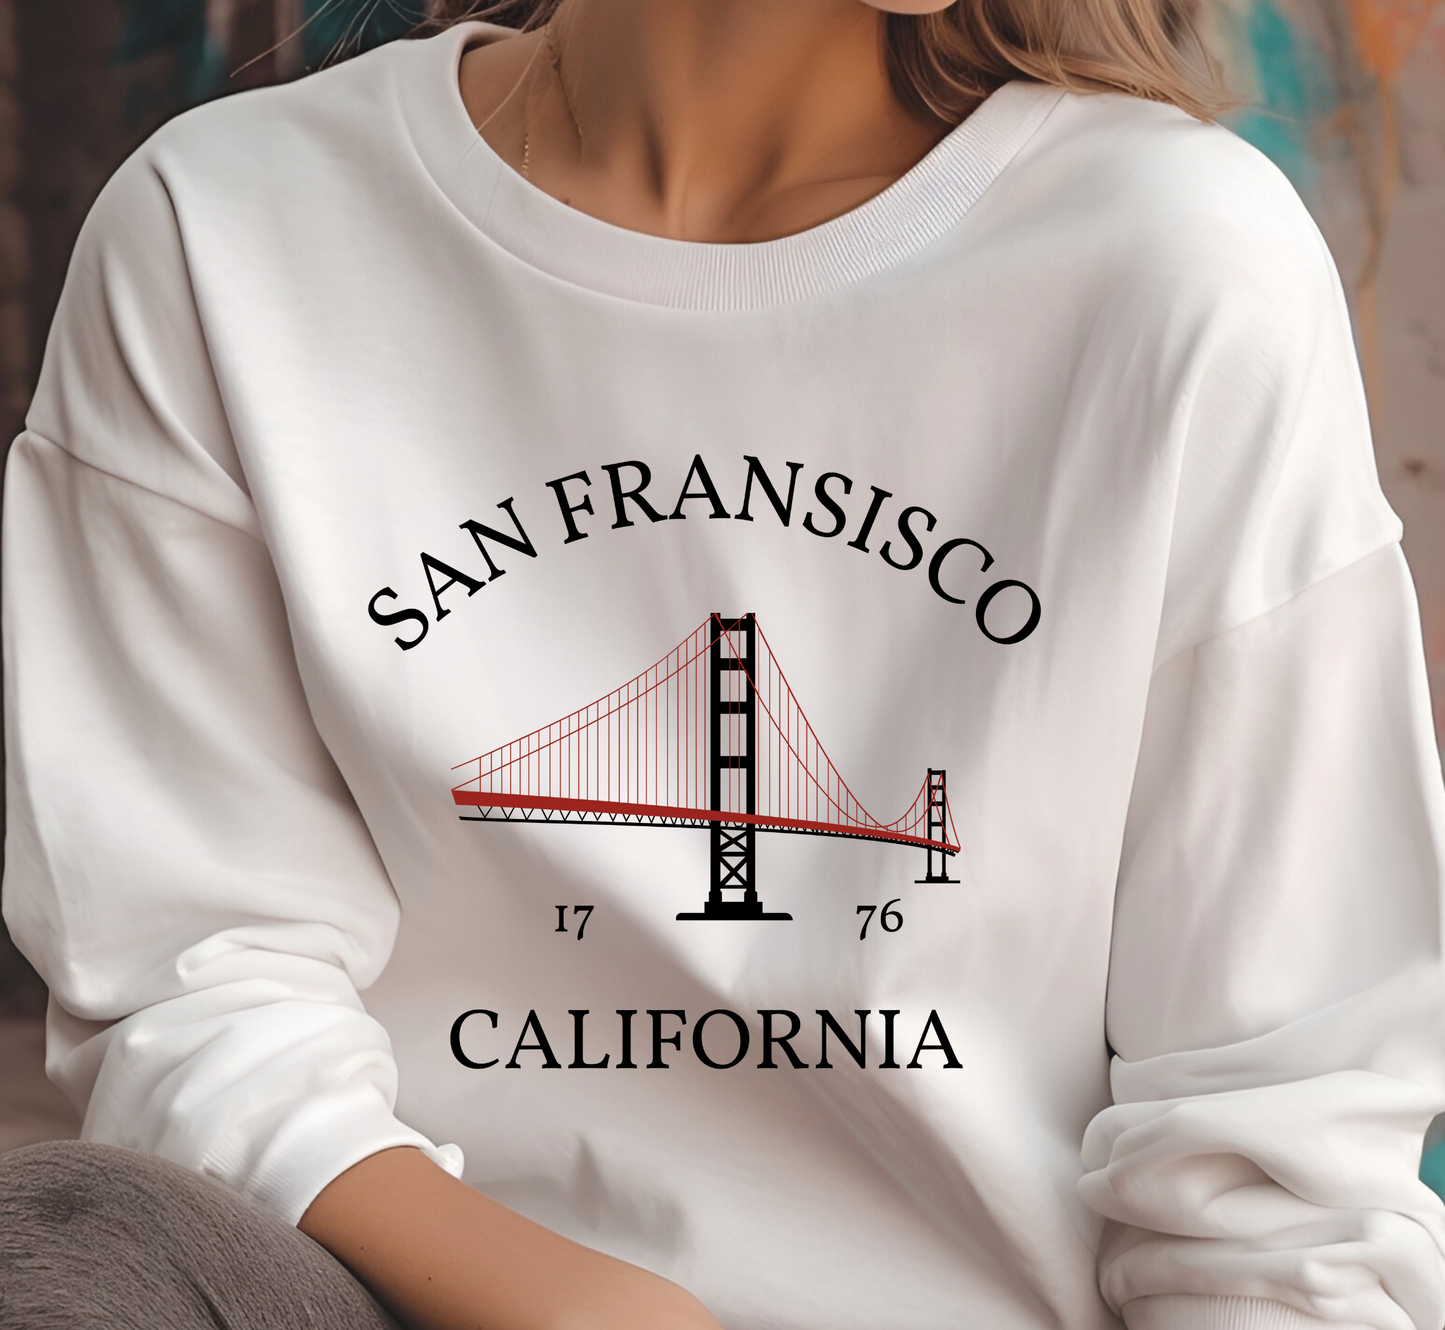 SanFransisco Sweatshirt, Golden Gate Bridge